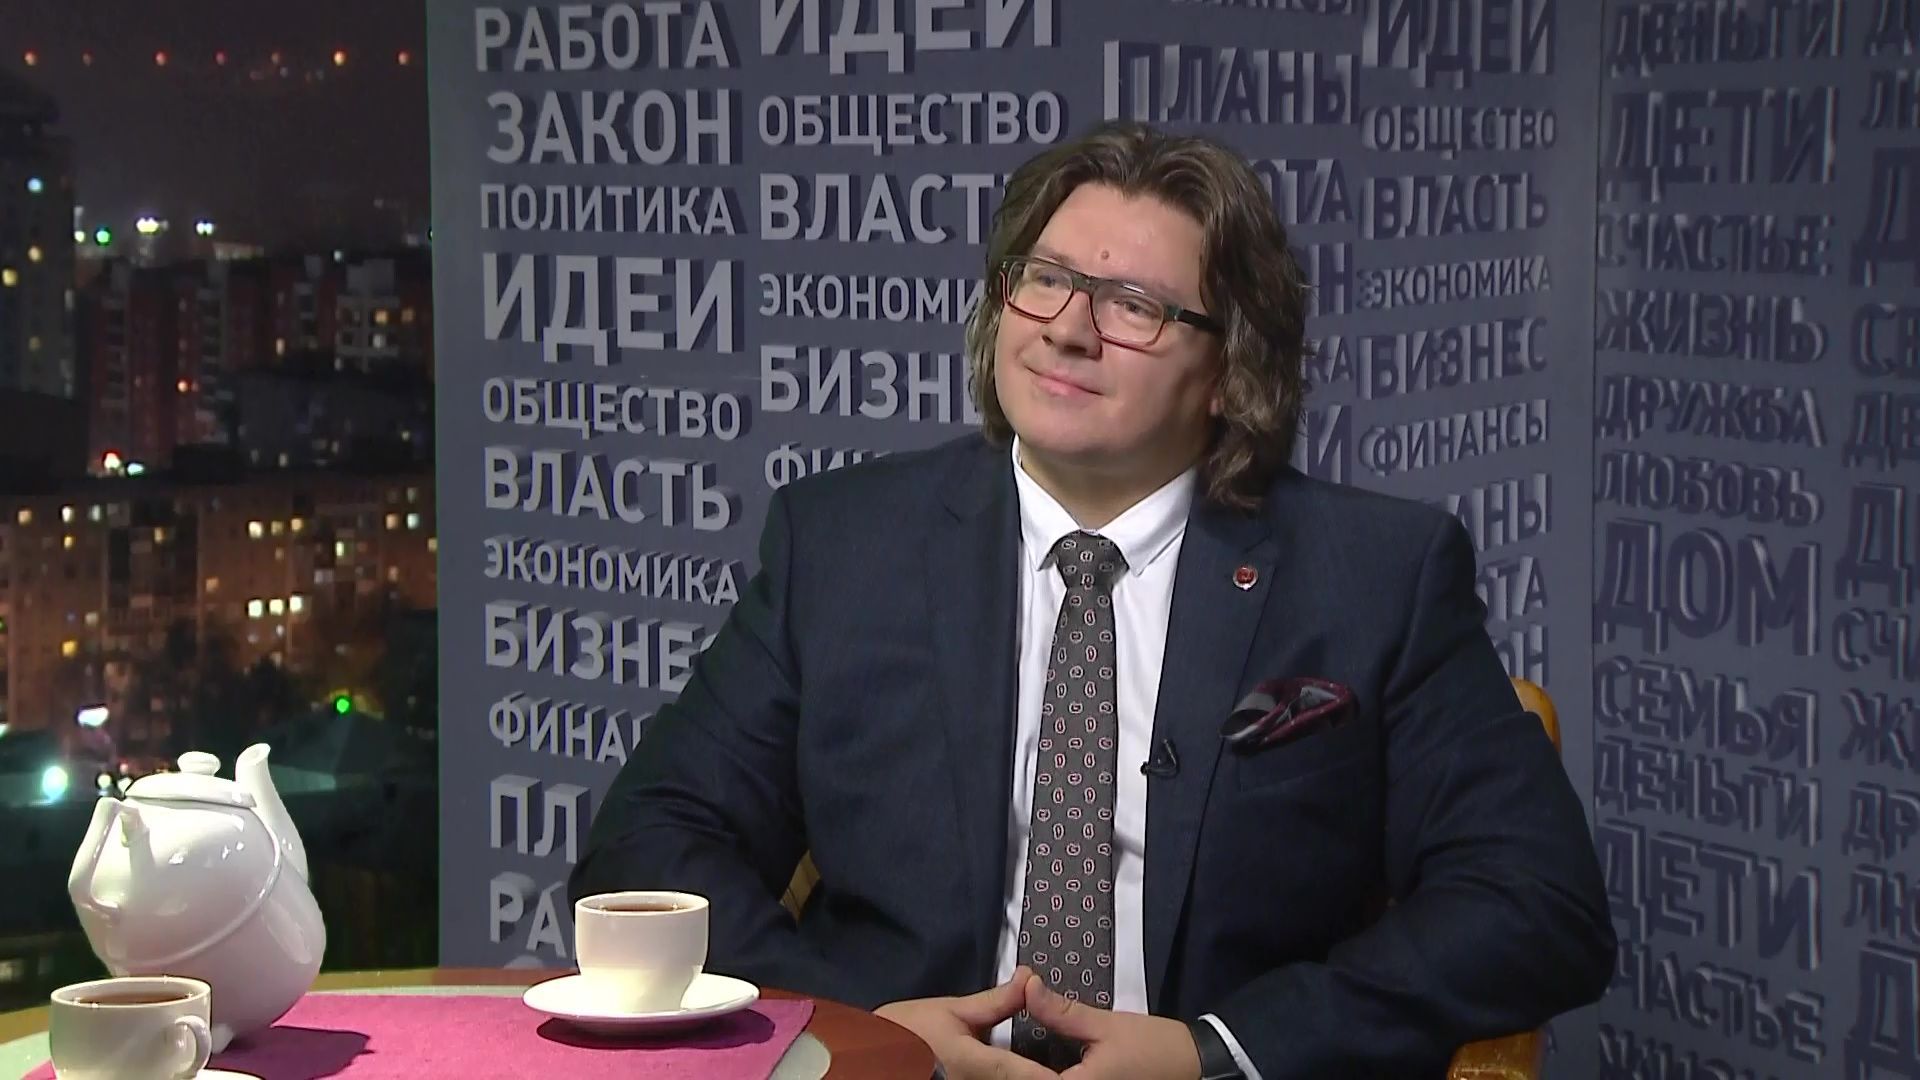 Сергей Исаев, депутат Законодательного Собрания Пермского края